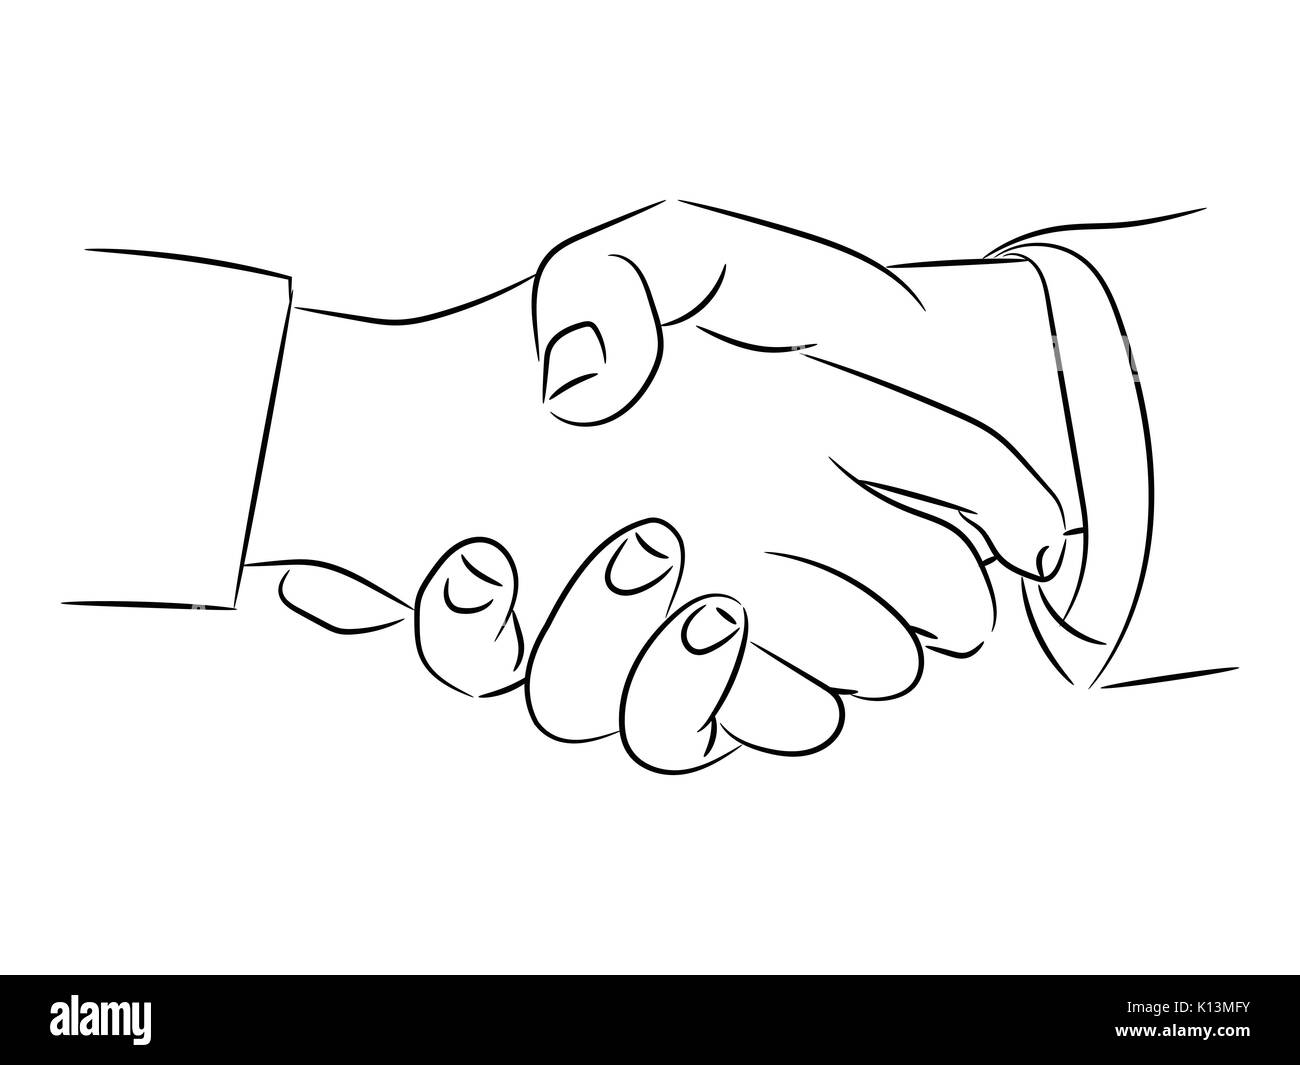 Von Hand zeichnen von Handshaking - Vector Illustration isoliert Stock Vektor